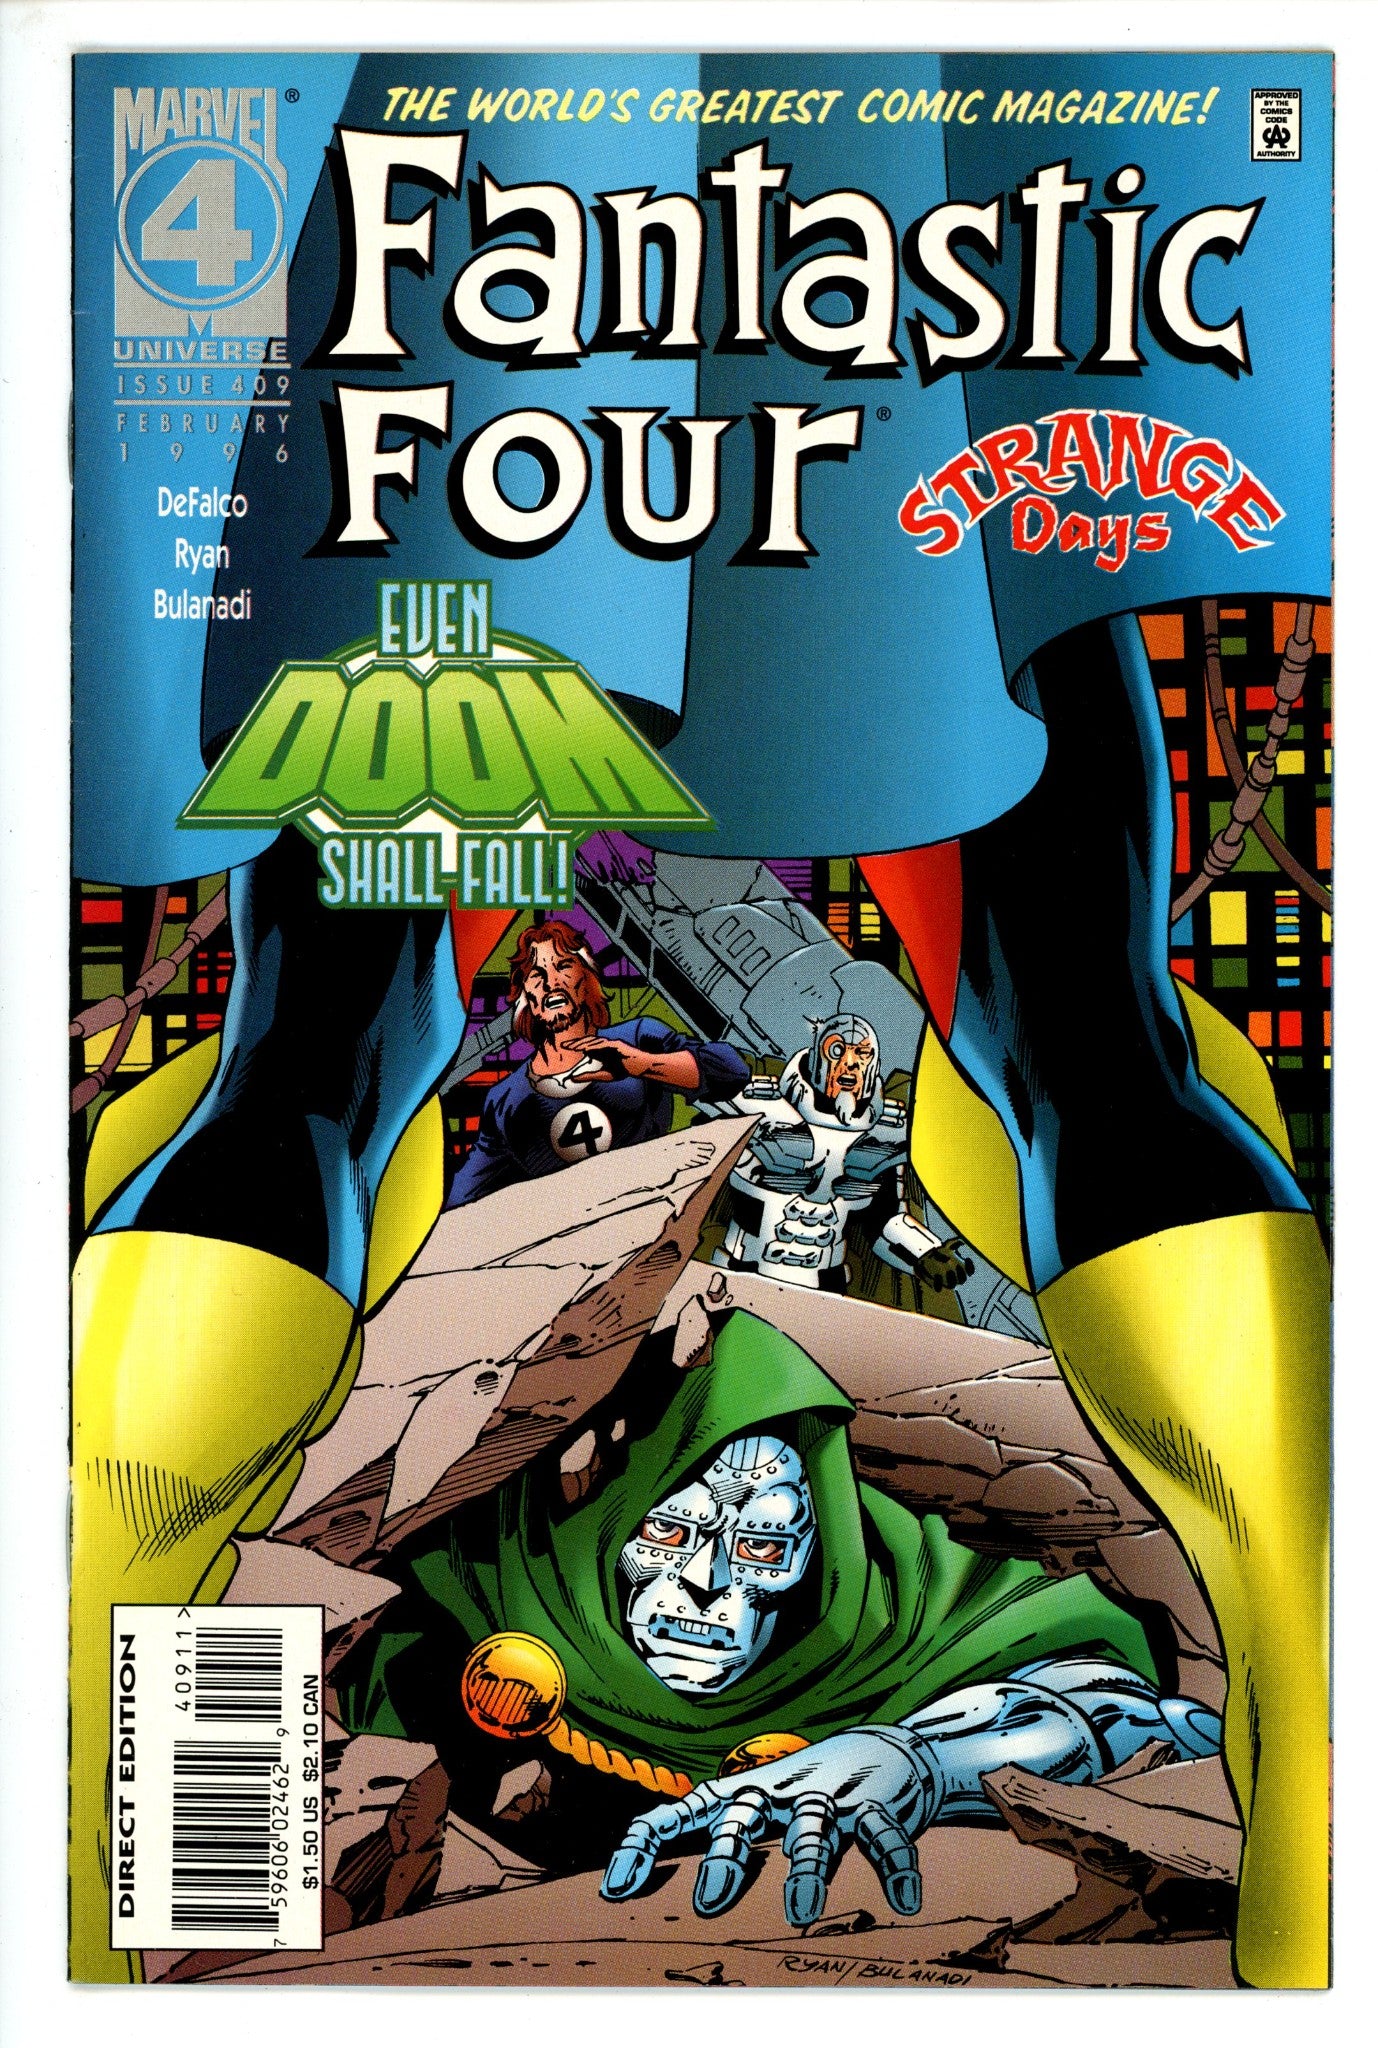 Fantastic Four Vol 1 409